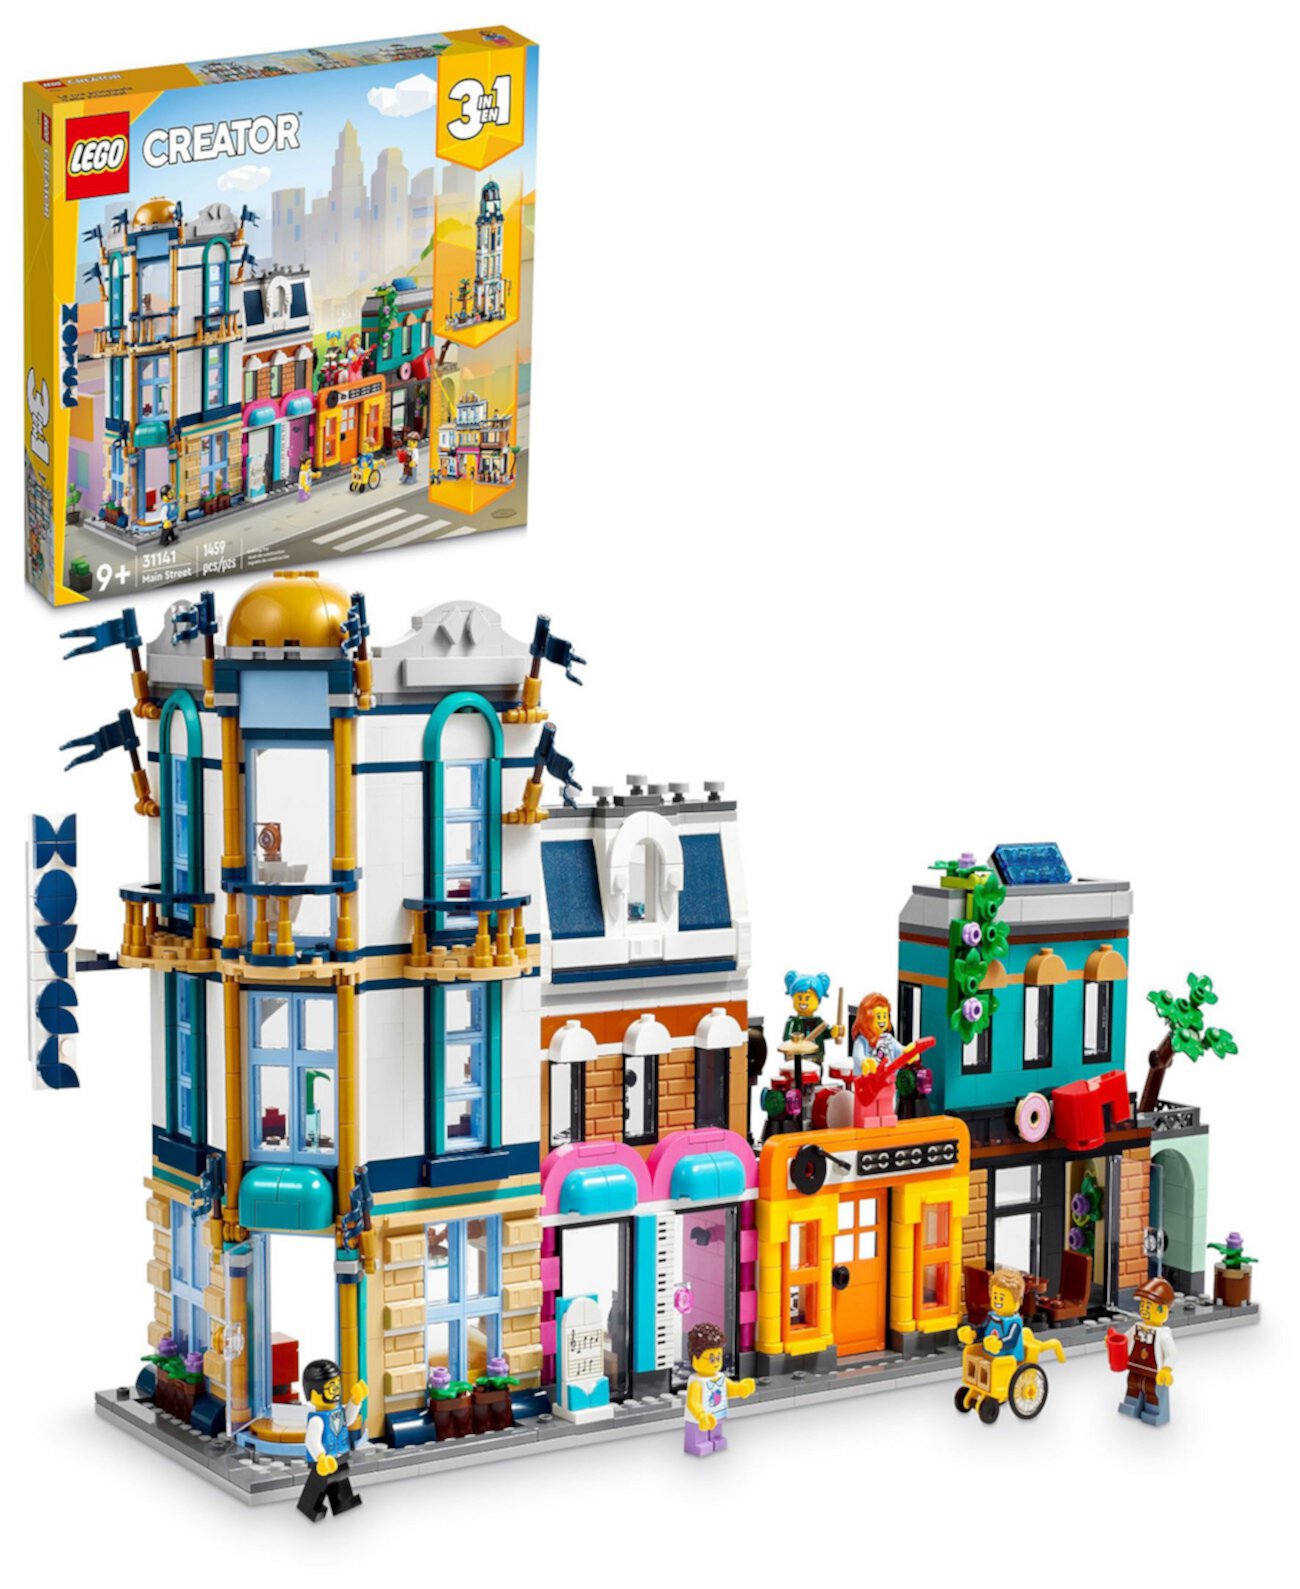 Набор для сборки минифигурок Городская улица Creator 31141 Lego